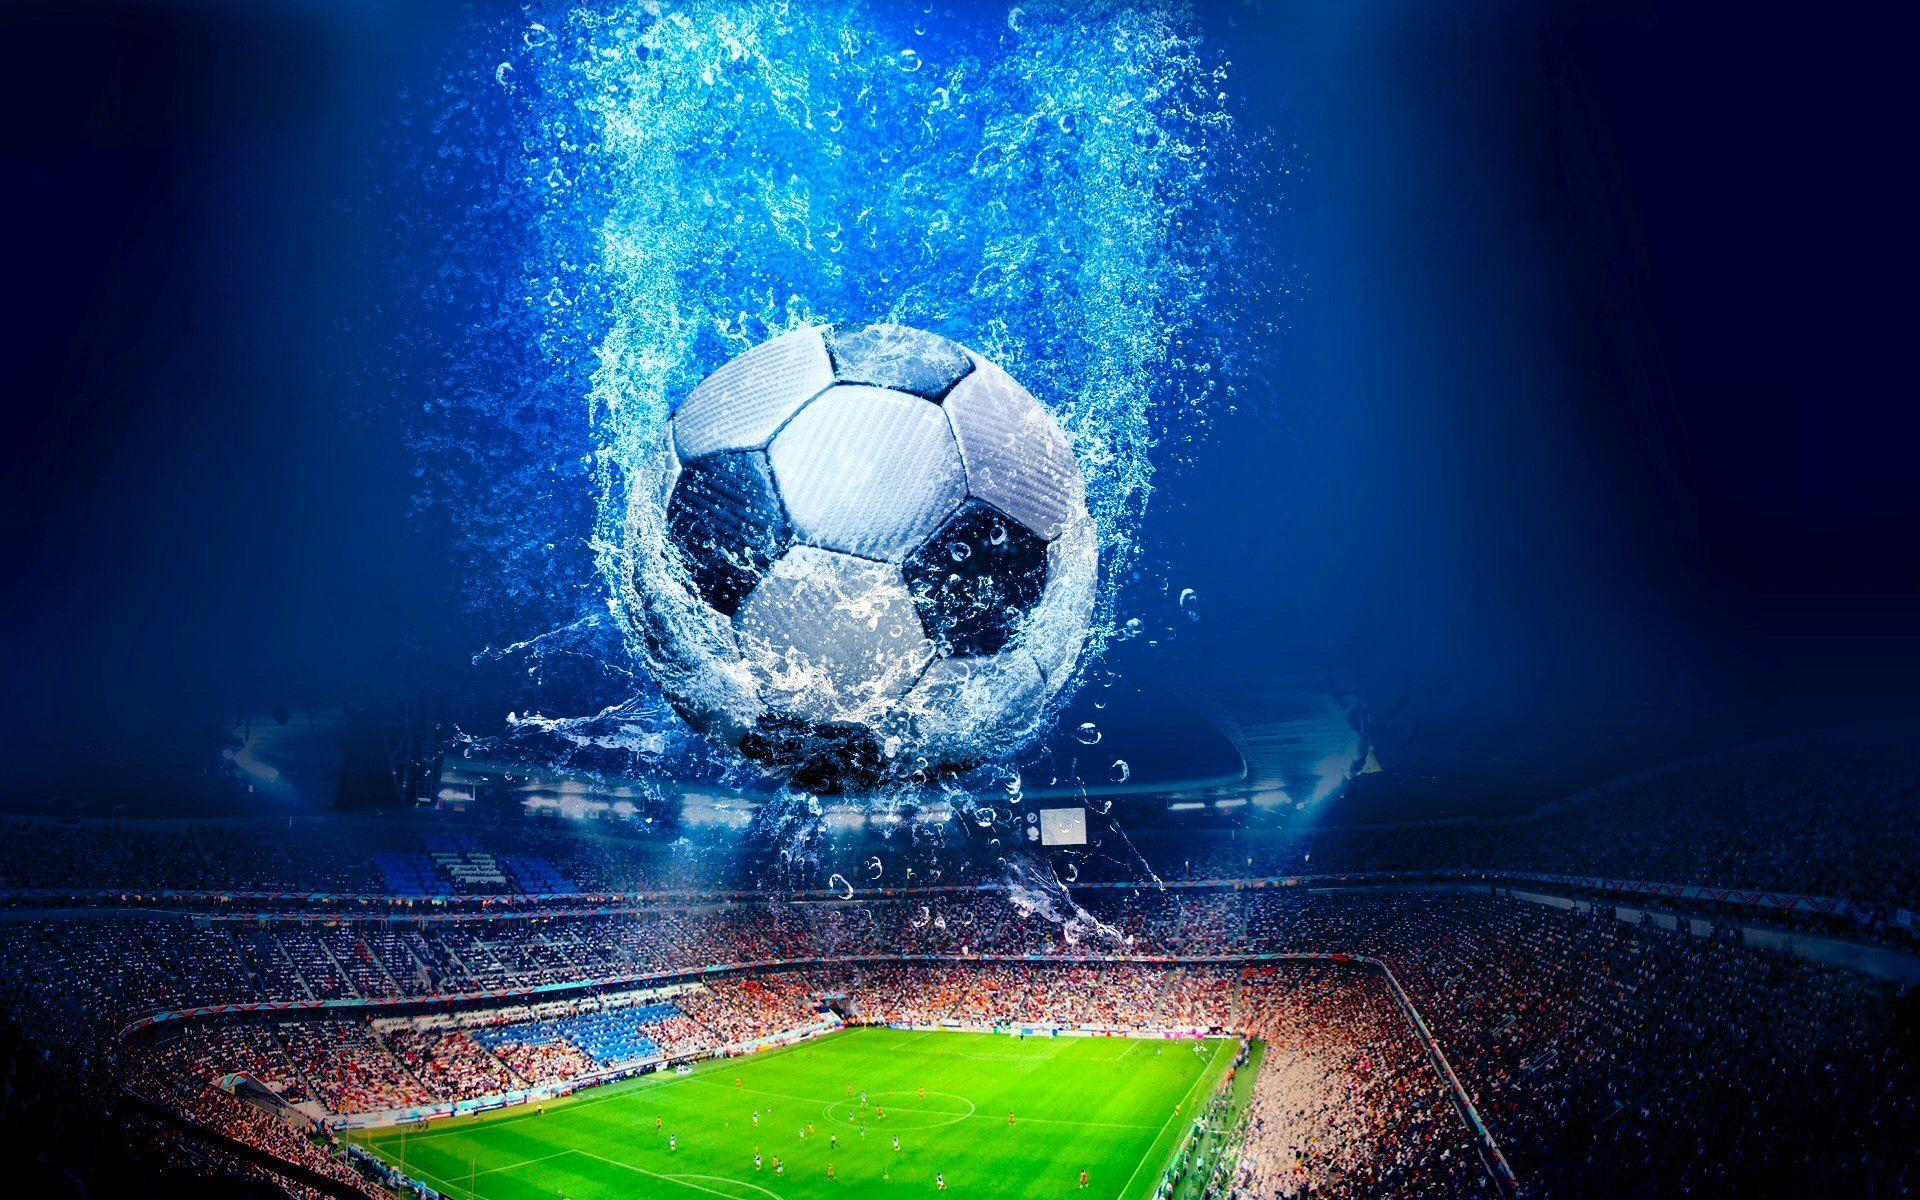 4K Ultra HD Soccer Wallpapers - Top Free 4K Ultra HD ...